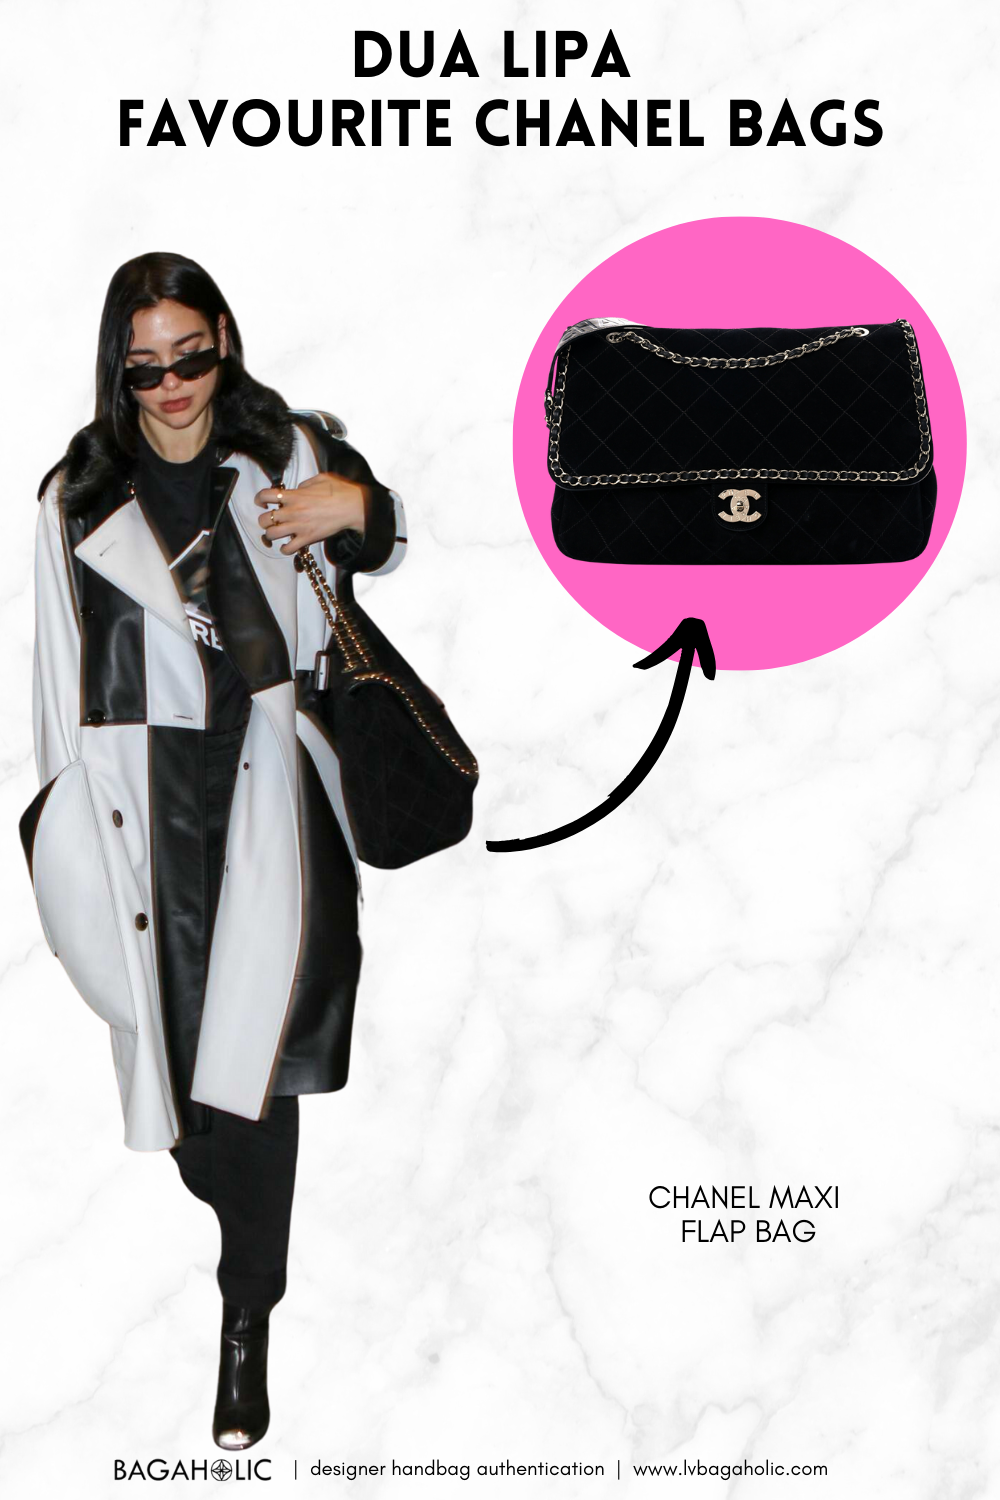 100 celebrità e le loro borse Chanel preferite (Parte 1) Dua Lipa e la sua borsa Chanel